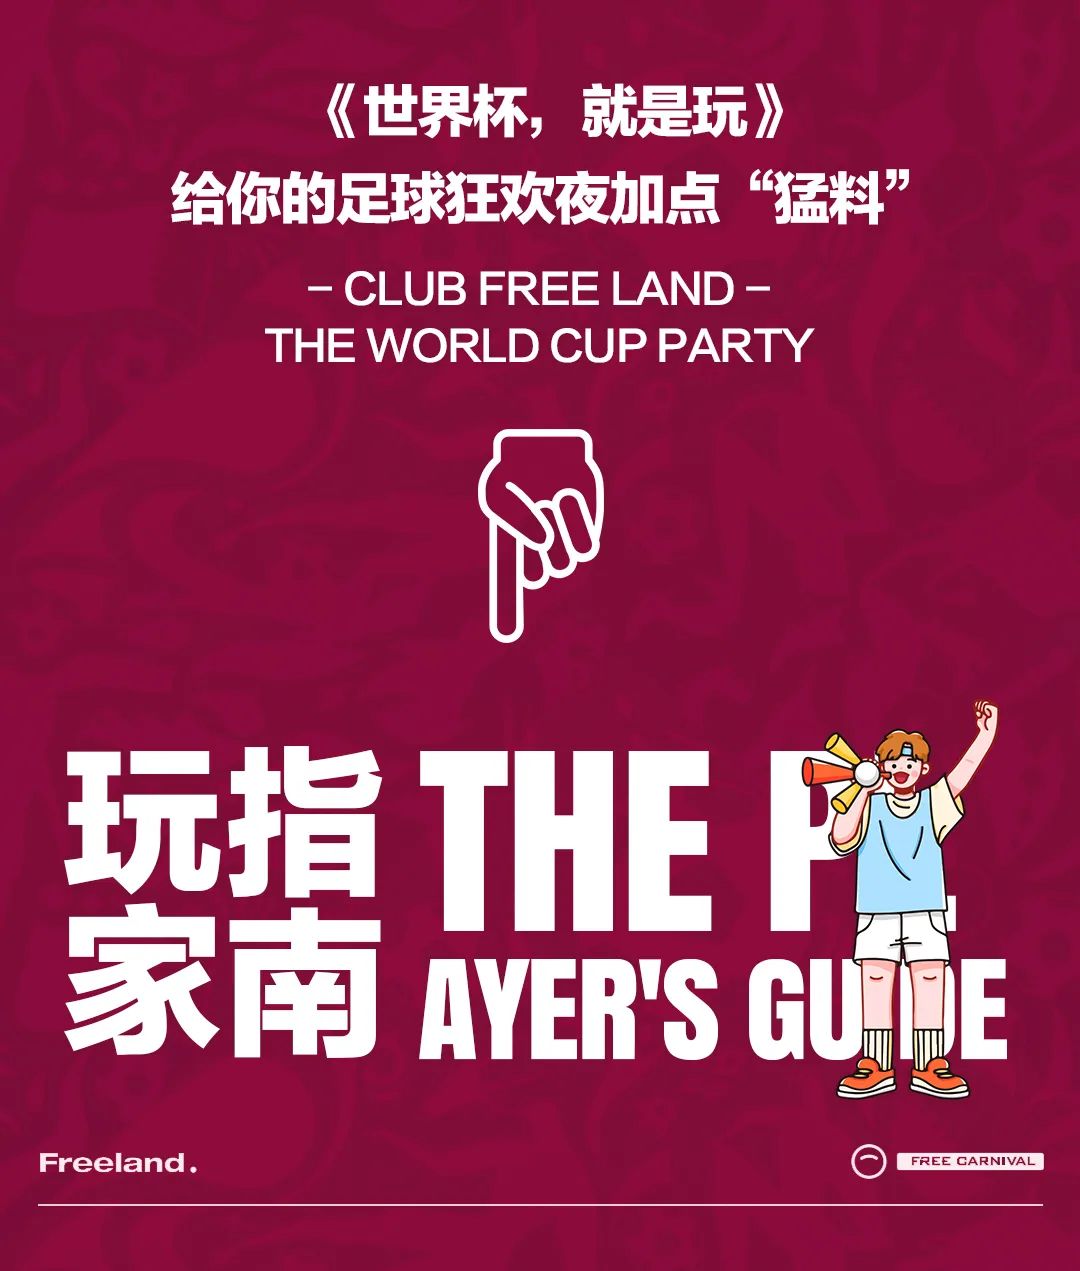 2022 卡塔尔世界杯 FREELAND和你一起 就是玩-长春自由之地酒吧/FREELAND CLUB